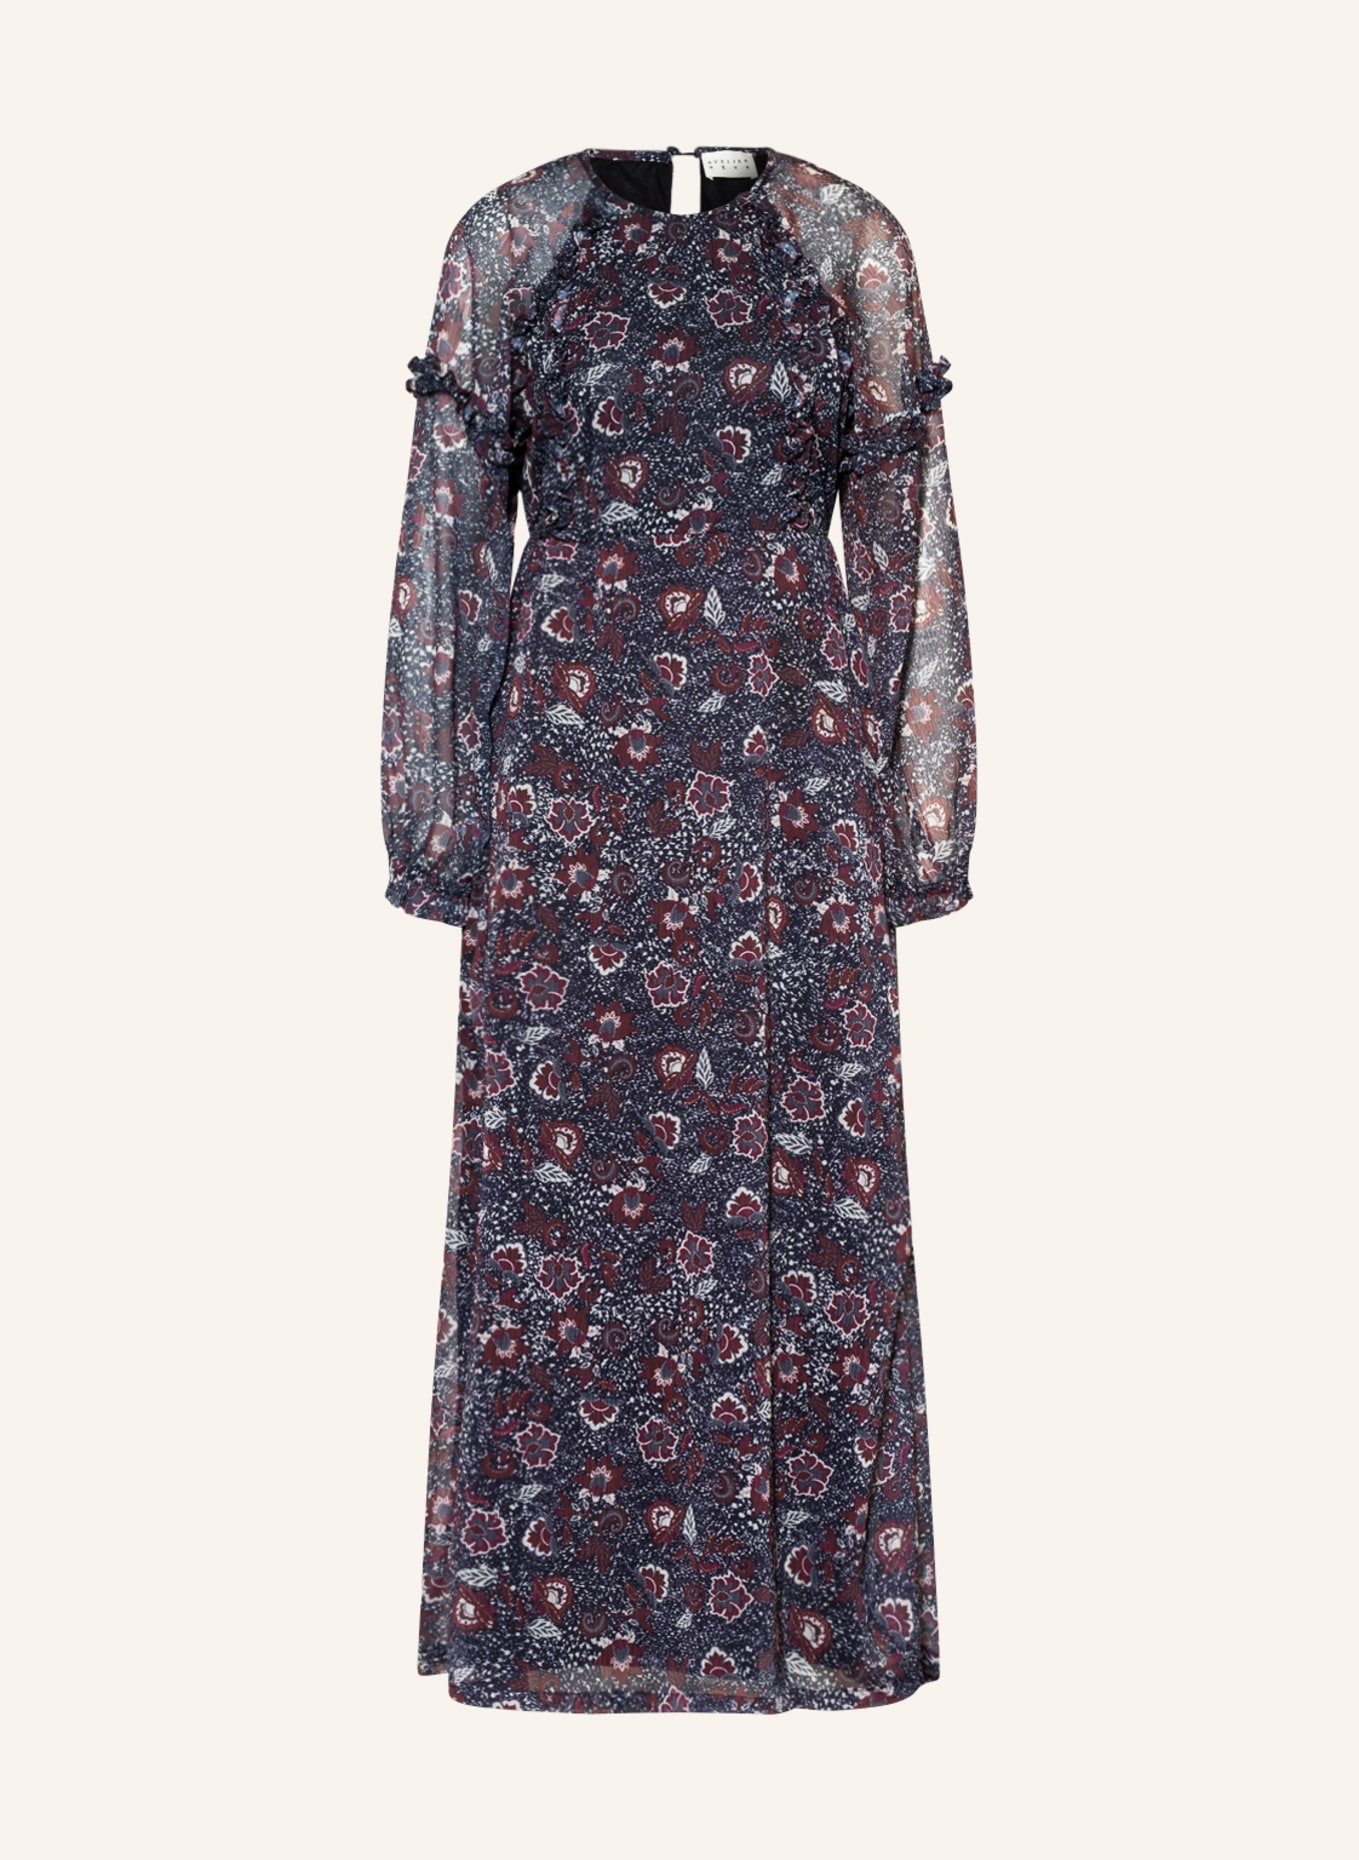 ICHI Kleid IRMURENO mit Rüschen, Farbe: DUNKELBLAU/ DUNKELROT/ WEISS (Bild 1)